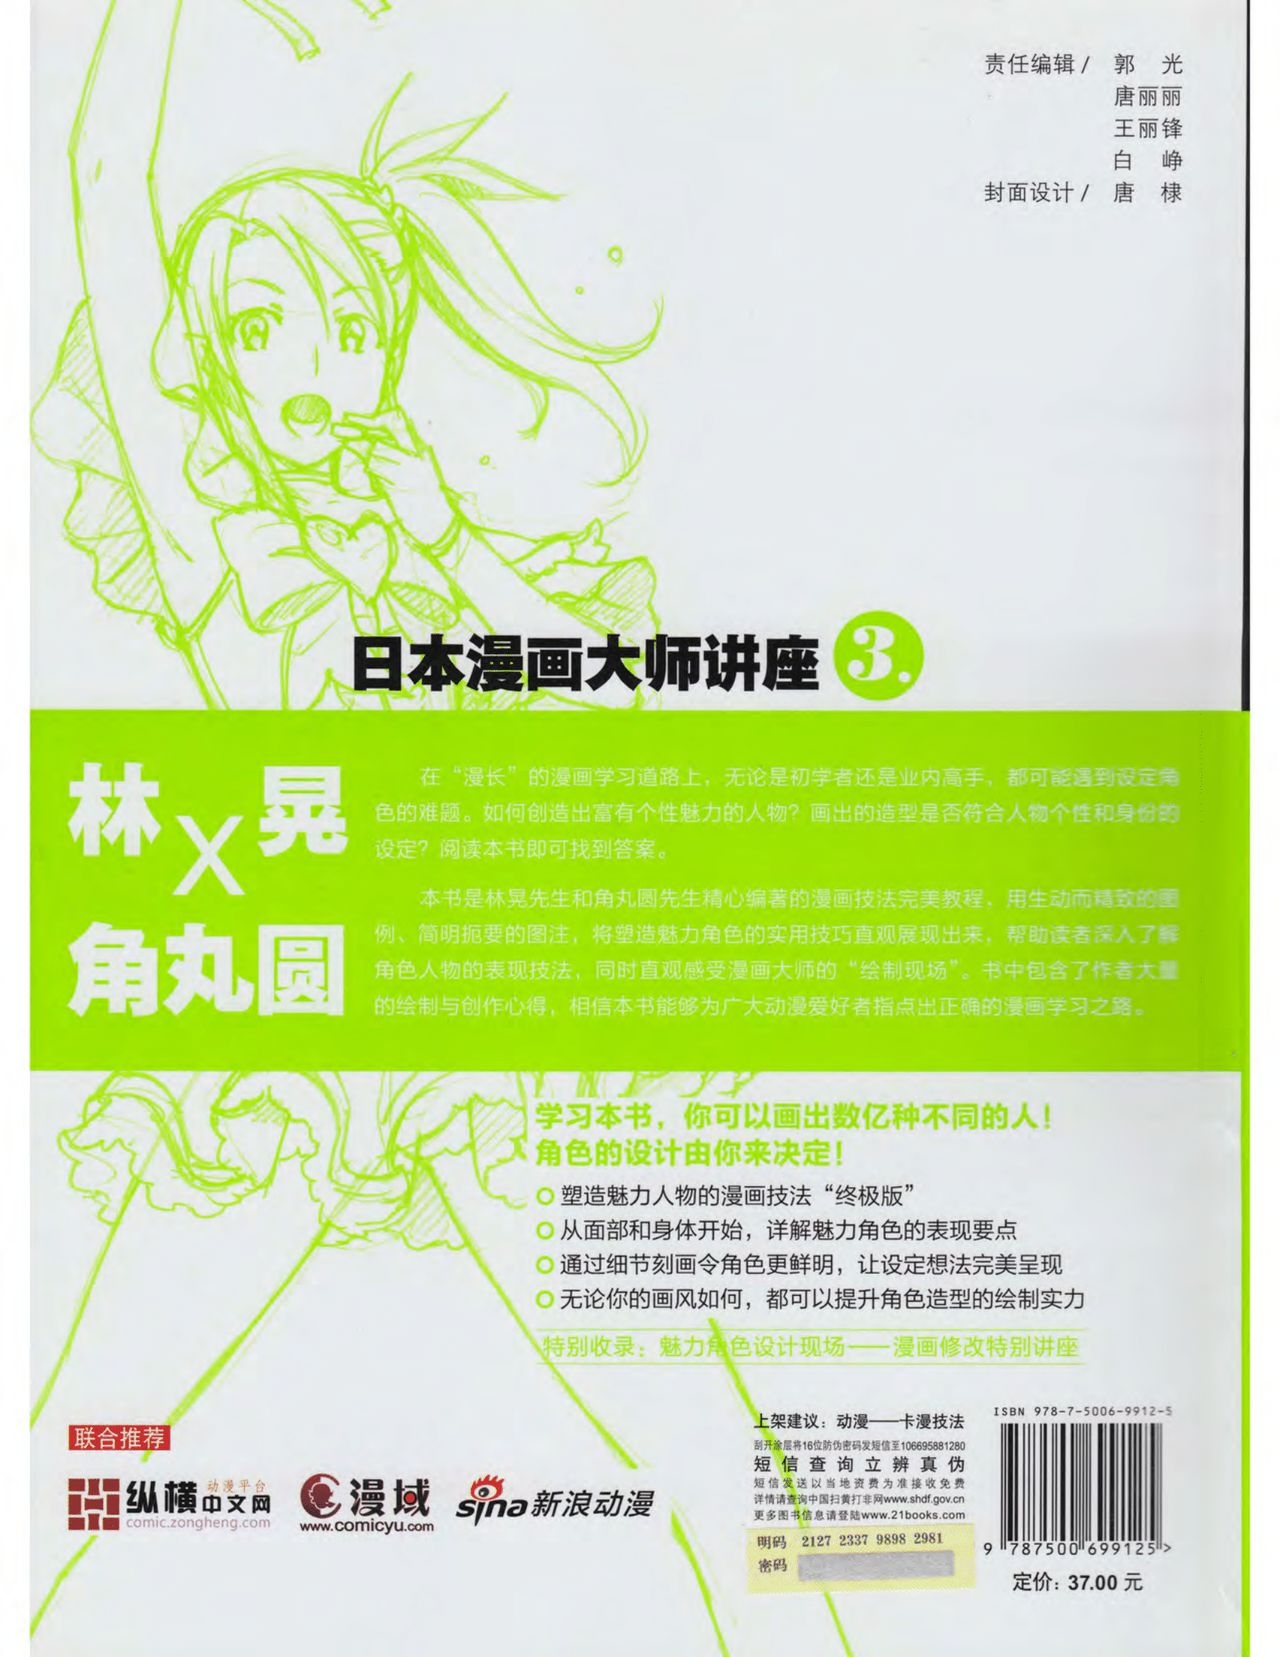 Japanese Manga Master Lecture 3: Lin Akira and Kakumaru Maru Talk About Glamorous Character Modeling 192